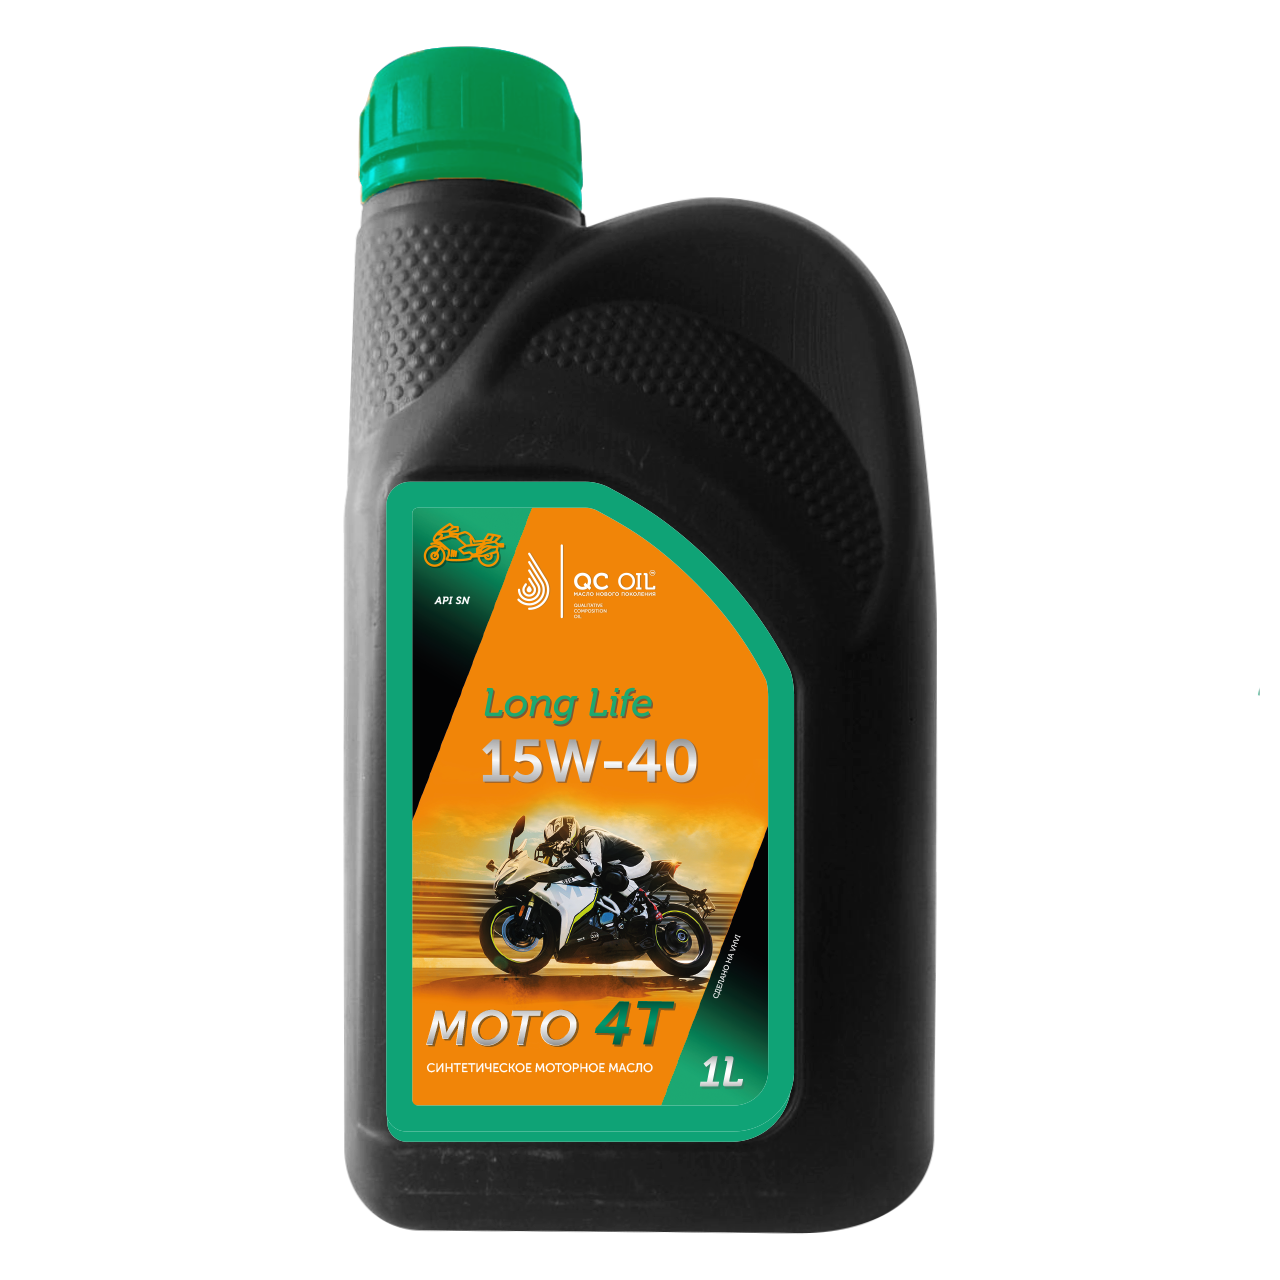 Моторное масло 15W-40 мото 4Т QC OIL Long Life синтетическое плакирующее, канистра 1л